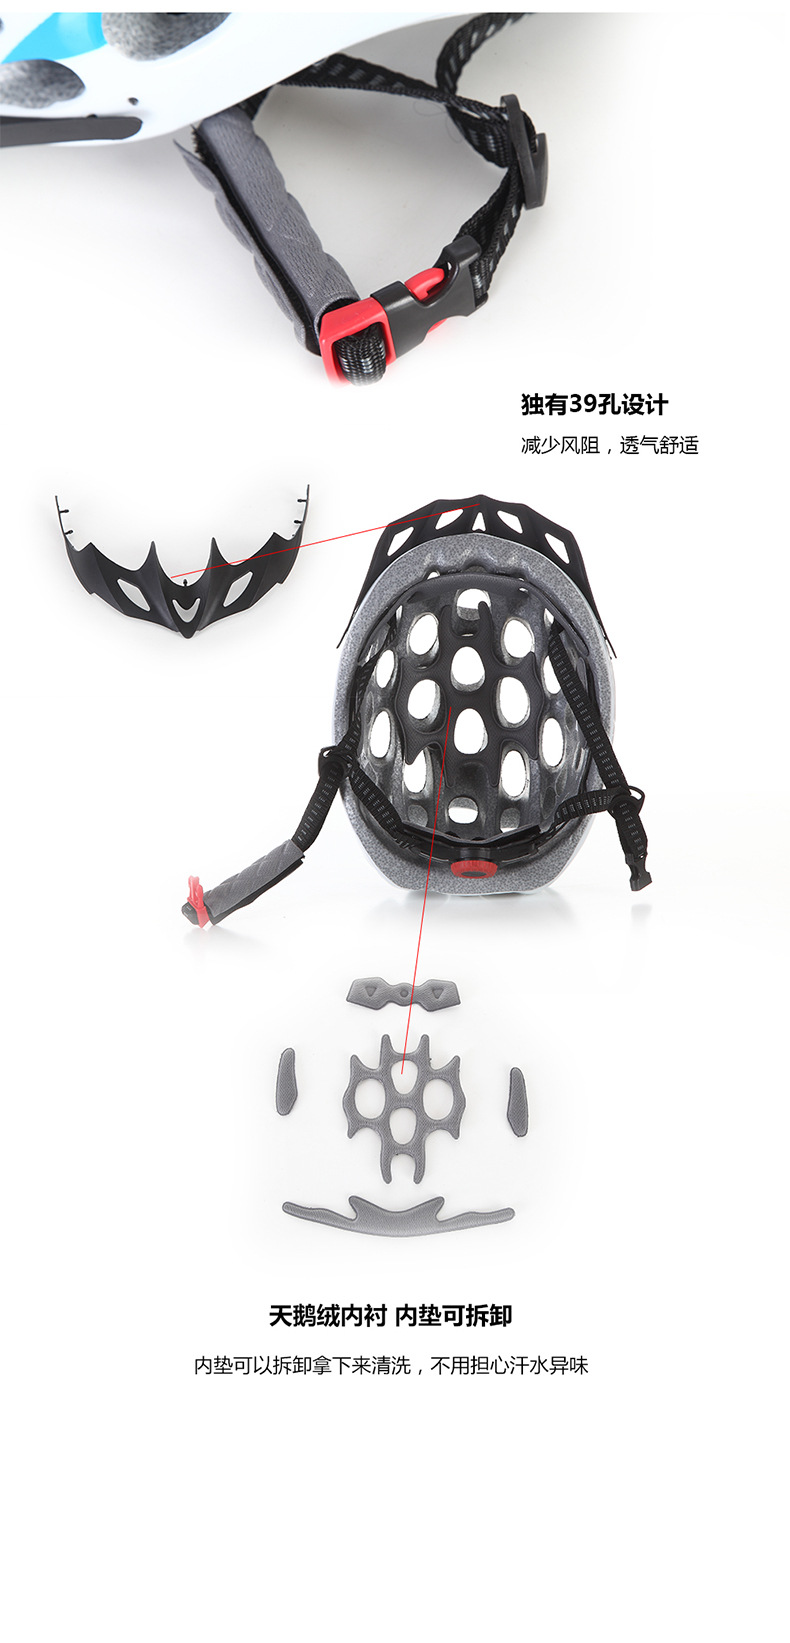 蜂窝高强度超透气多孔超轻户外骑行防护型头盔公路自行车头盔示例图11